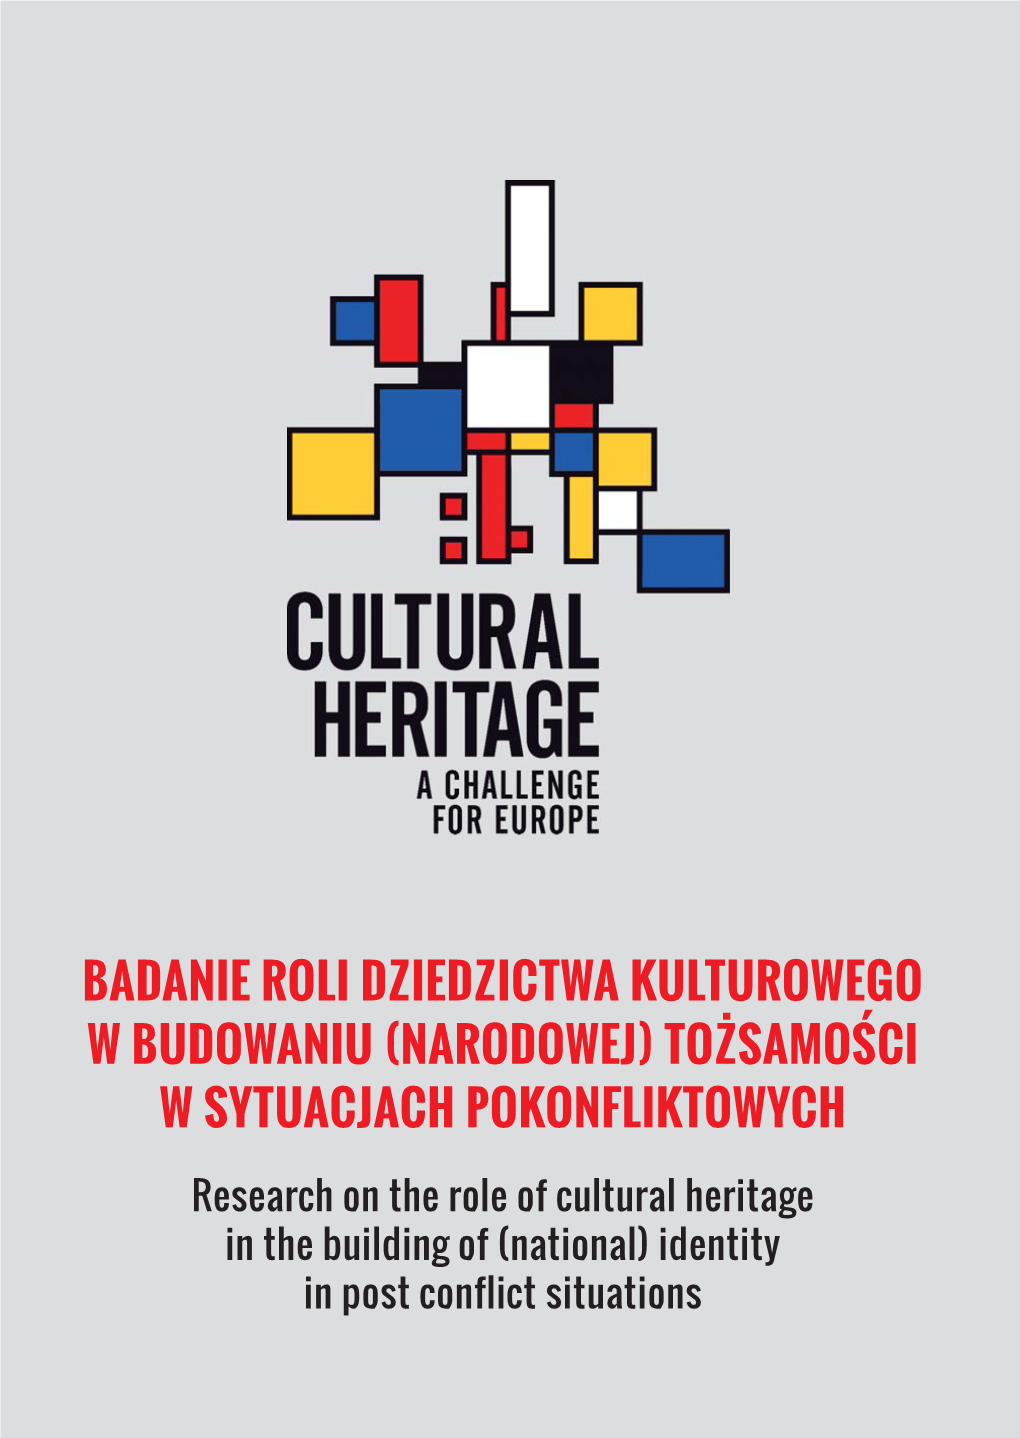 Badanie Roli Dziedzictwa Kulturowego W Budowaniu (Narodowej) Tożsamości W Sytuacjach Pokonfliktowych